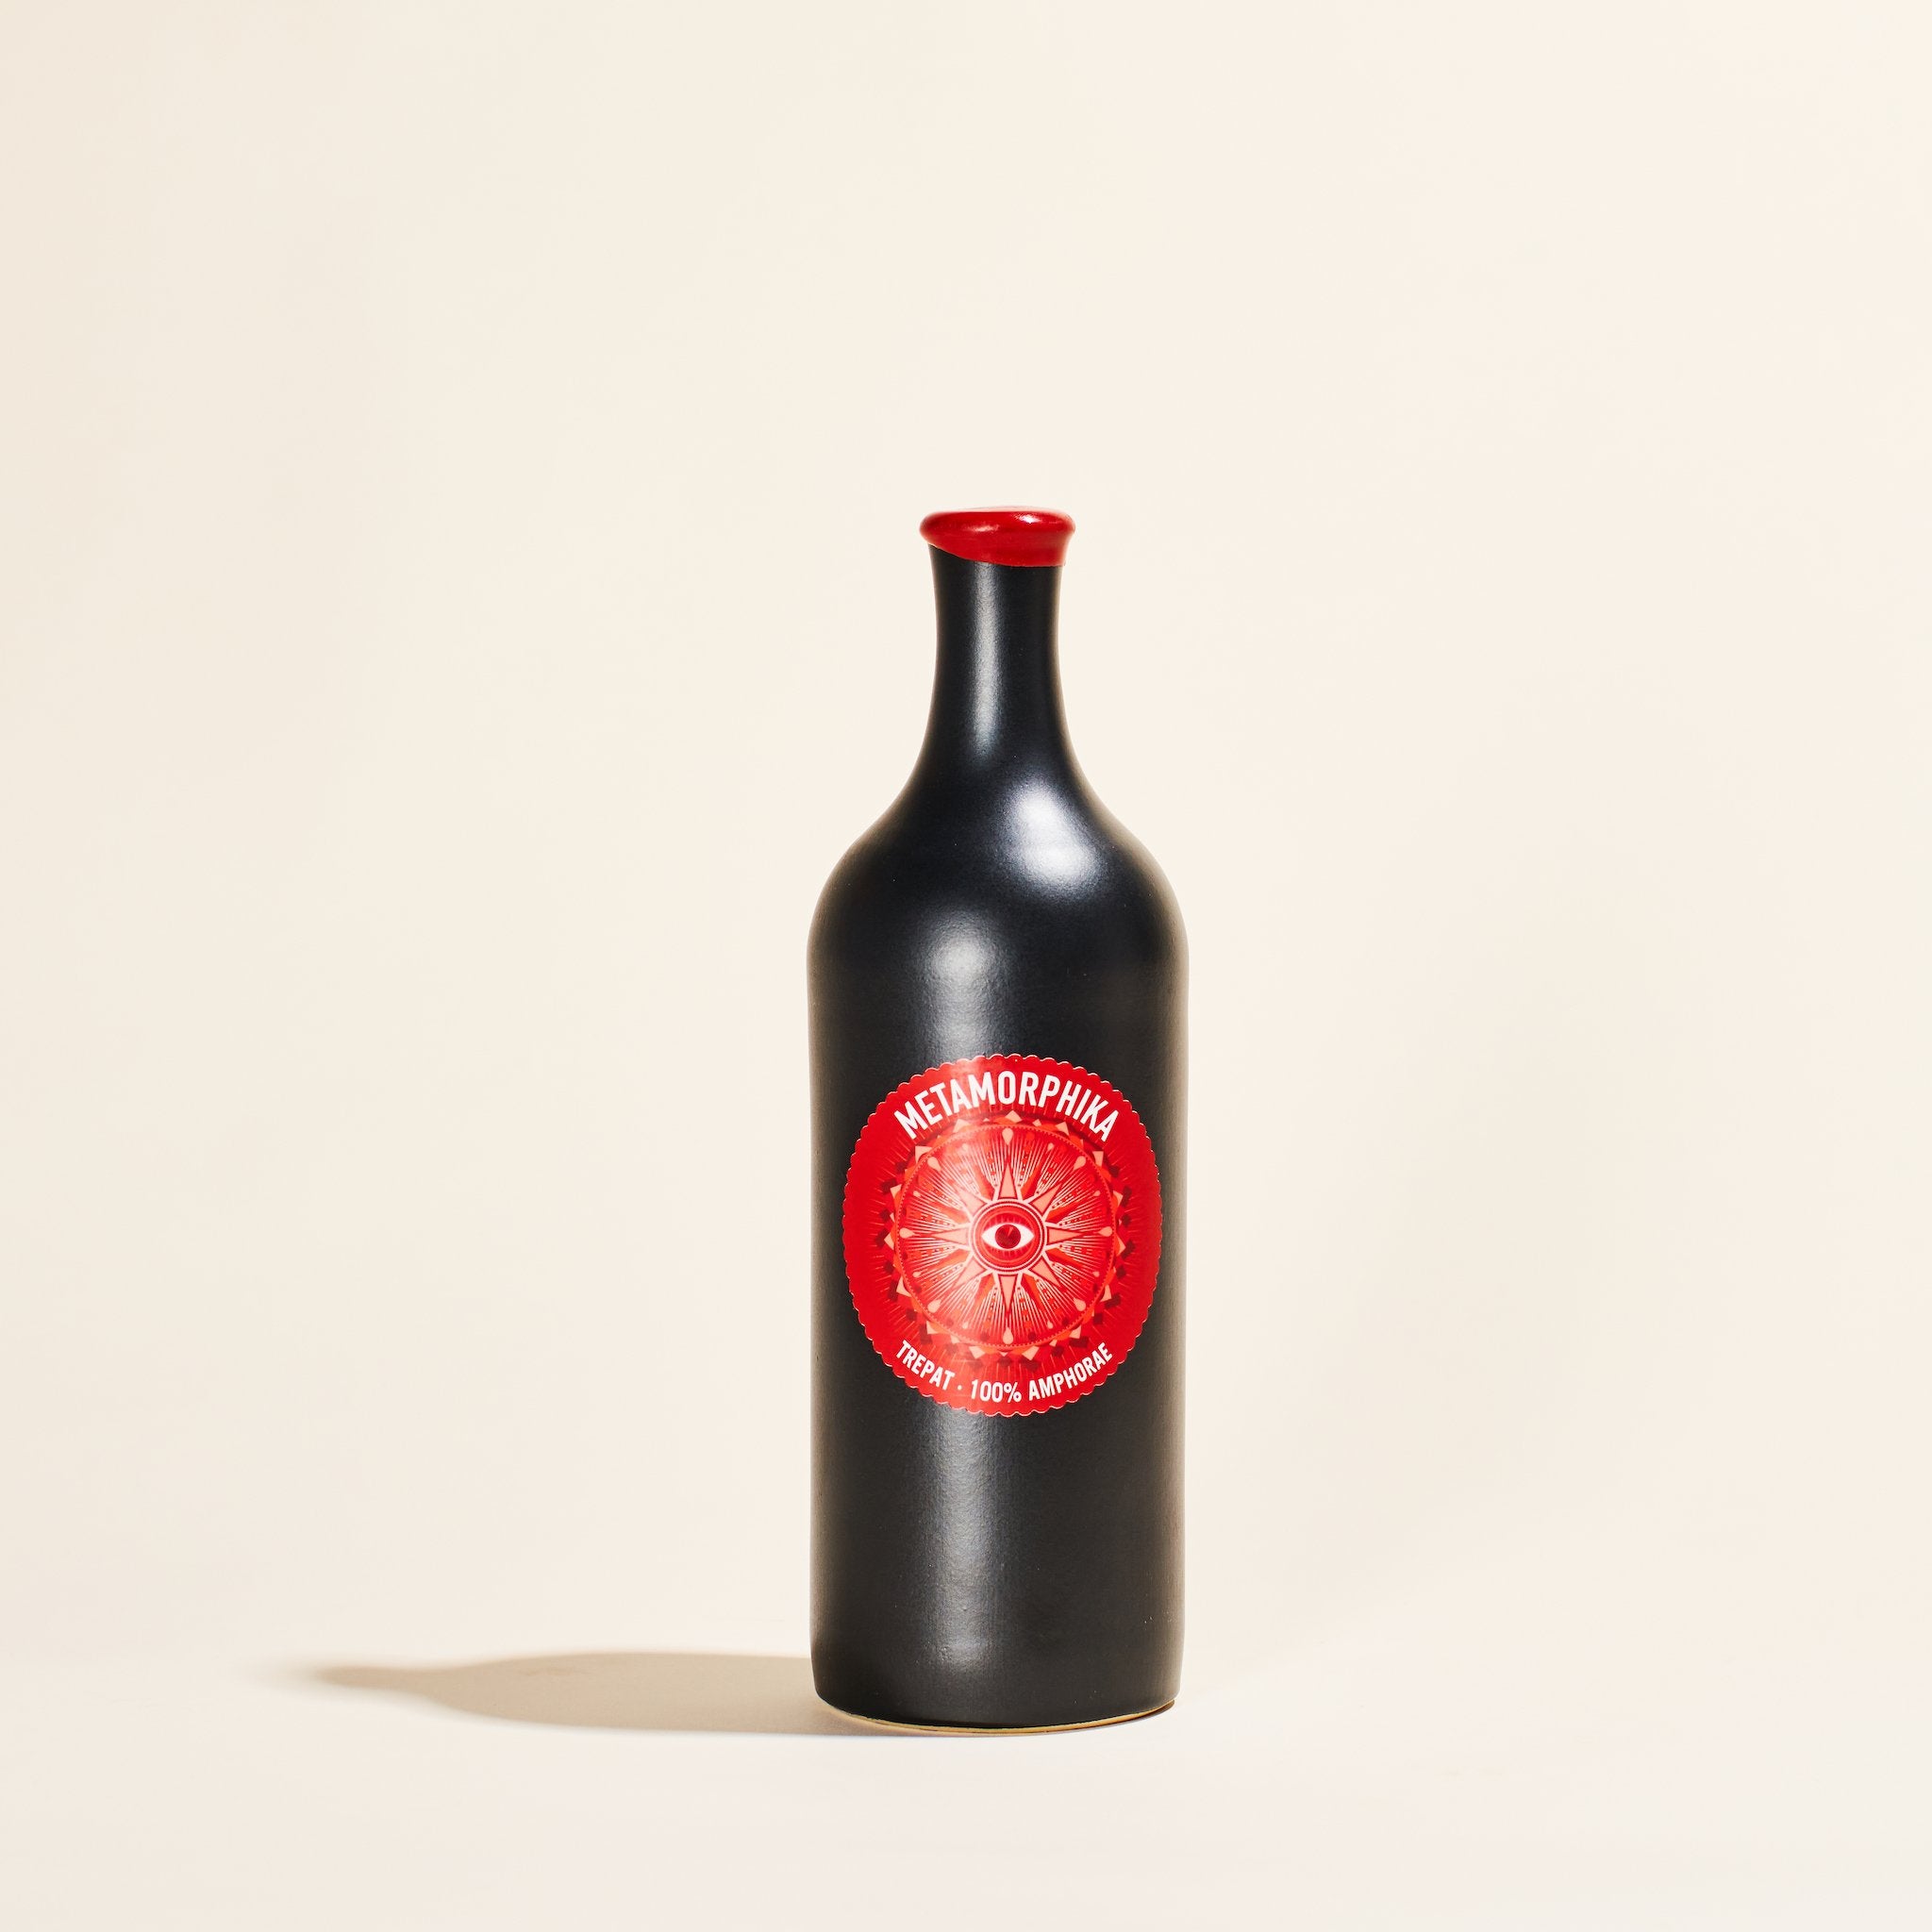 metamorphika trepat amphora costador catalunya spain  natural red wine